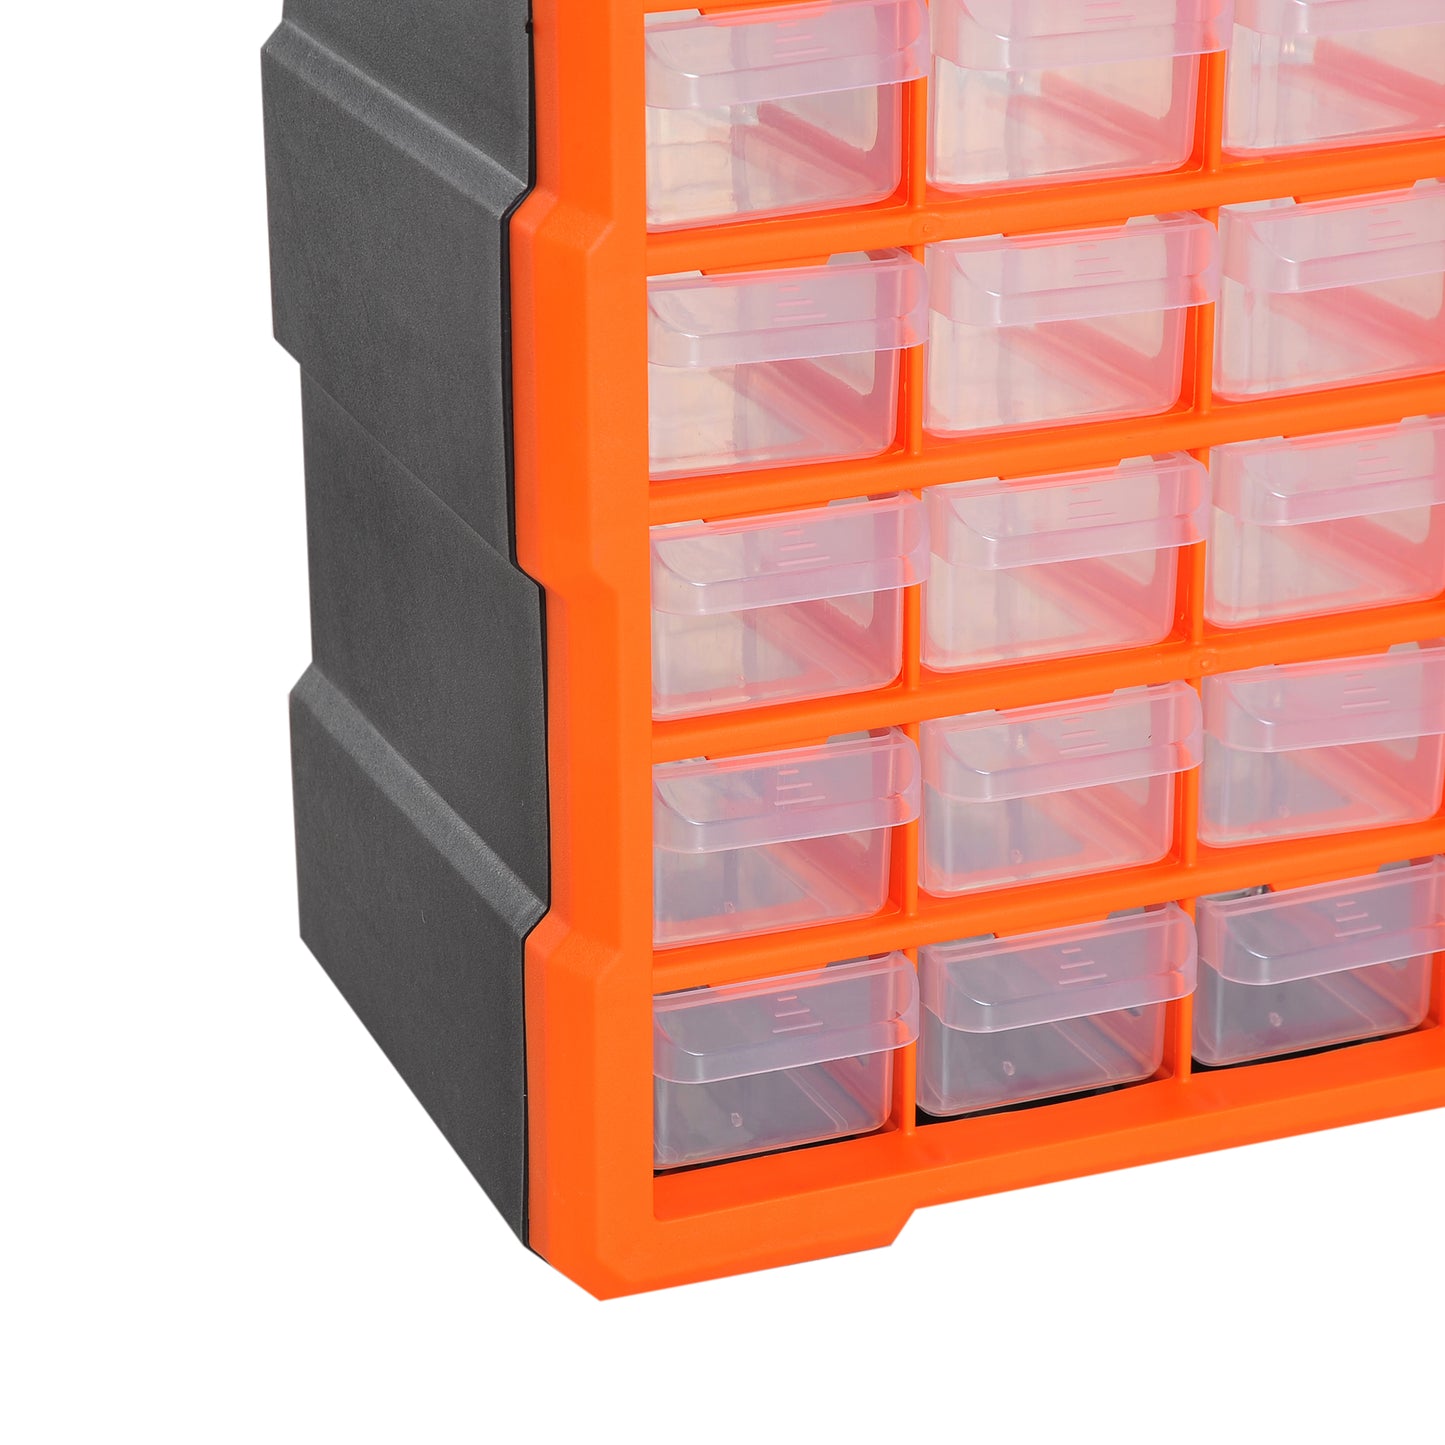 DURHAND 60 Drawer Storage Cabinets, 38Lx16Dx47.5H cm, Plastic-Orange